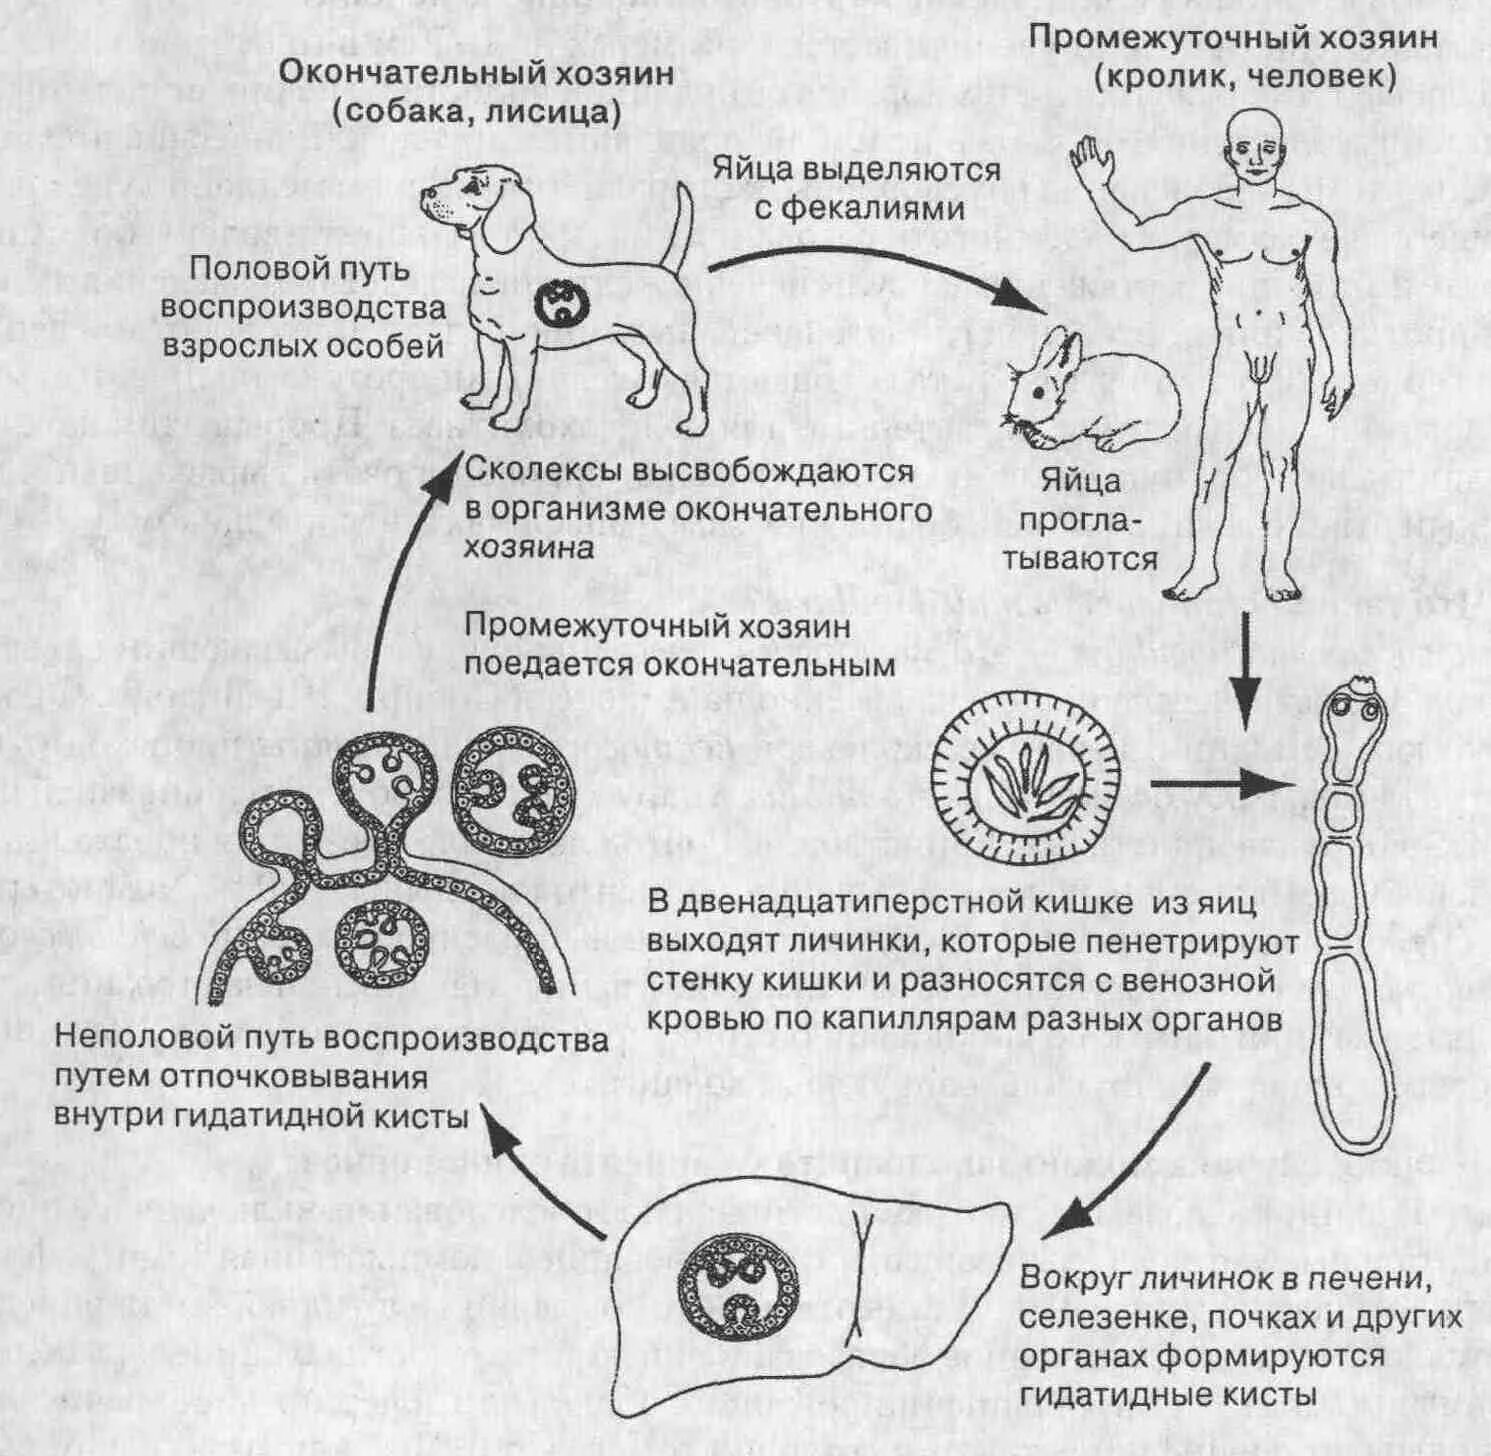 Промежуточный и основной хозяин человек. Цикл развития эхинококка Echinococcus granulosus. Эхинококк Echinococcus granulosus жизненный цикл. Эхинококкоз цикл развития схема. Цикл развития Echinococcus granulosus.